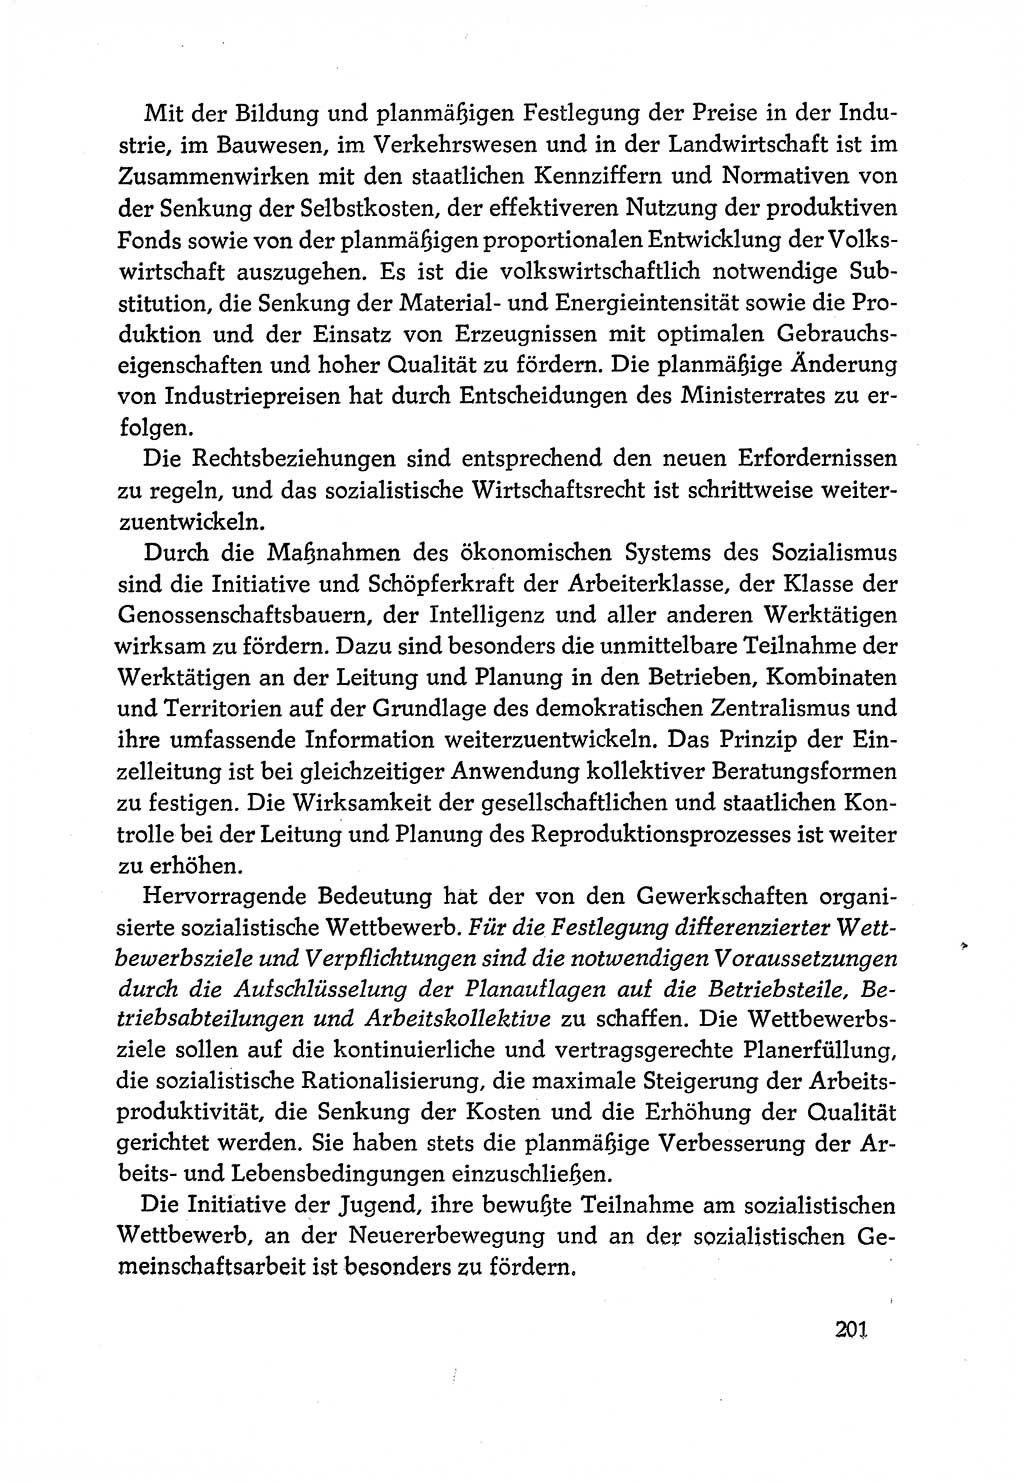 Dokumente der Sozialistischen Einheitspartei Deutschlands (SED) [Deutsche Demokratische Republik (DDR)] 1970-1971, Seite 201 (Dok. SED DDR 1970-1971, S. 201)